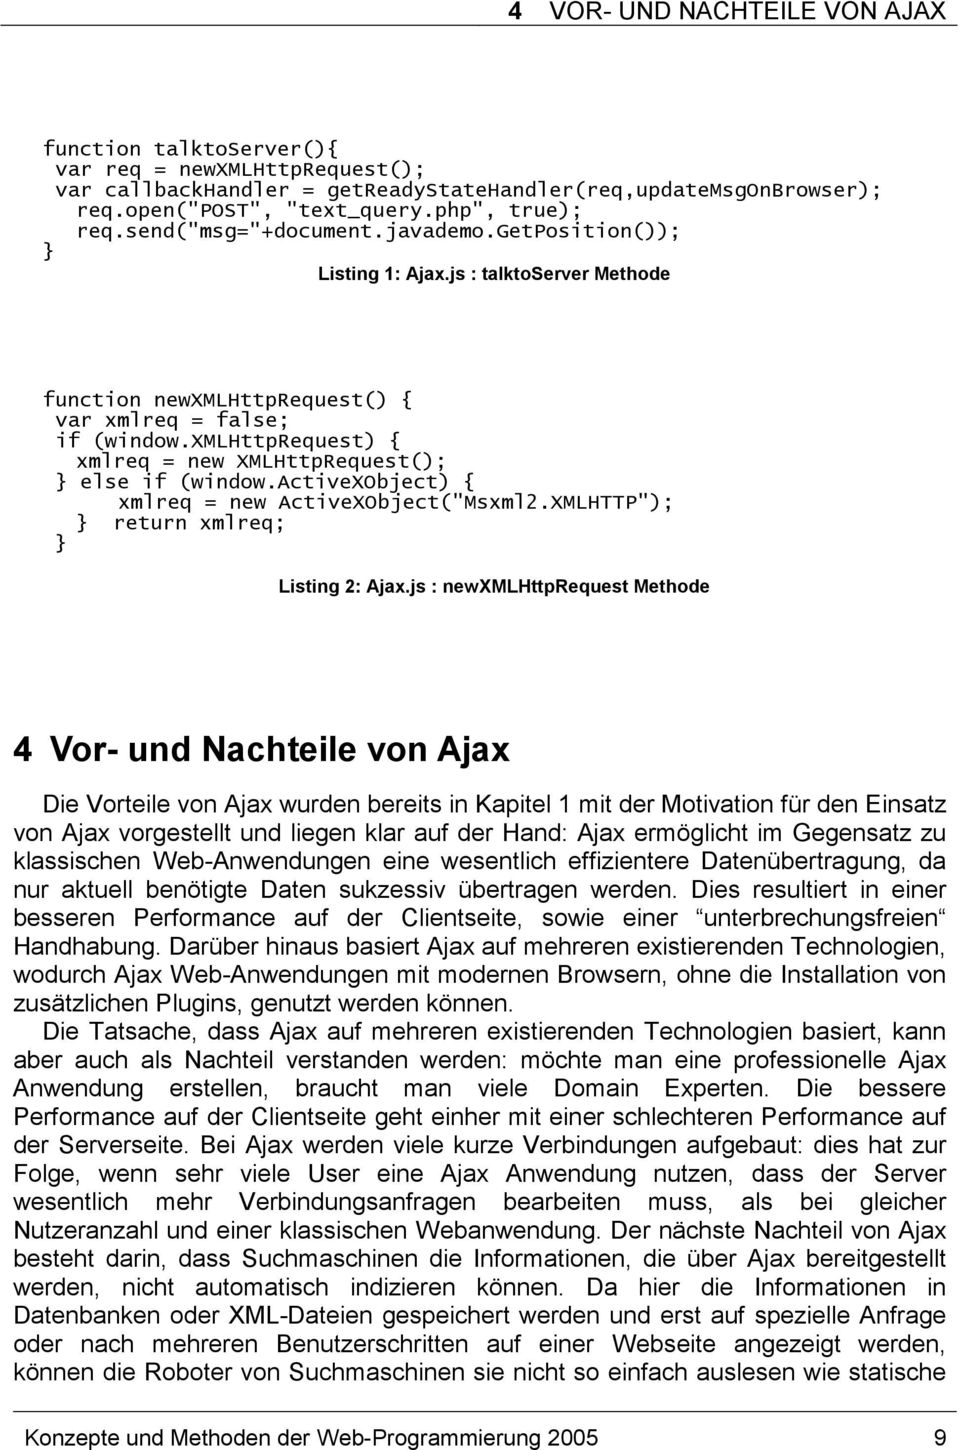 xmlhttprequest) { xmlreq = new XMLHttpRequest(); } else if (window.activexobject) { xmlreq = new ActiveXObject("Msxml2.XMLHTTP"); } return xmlreq; } Listing 2: Ajax.